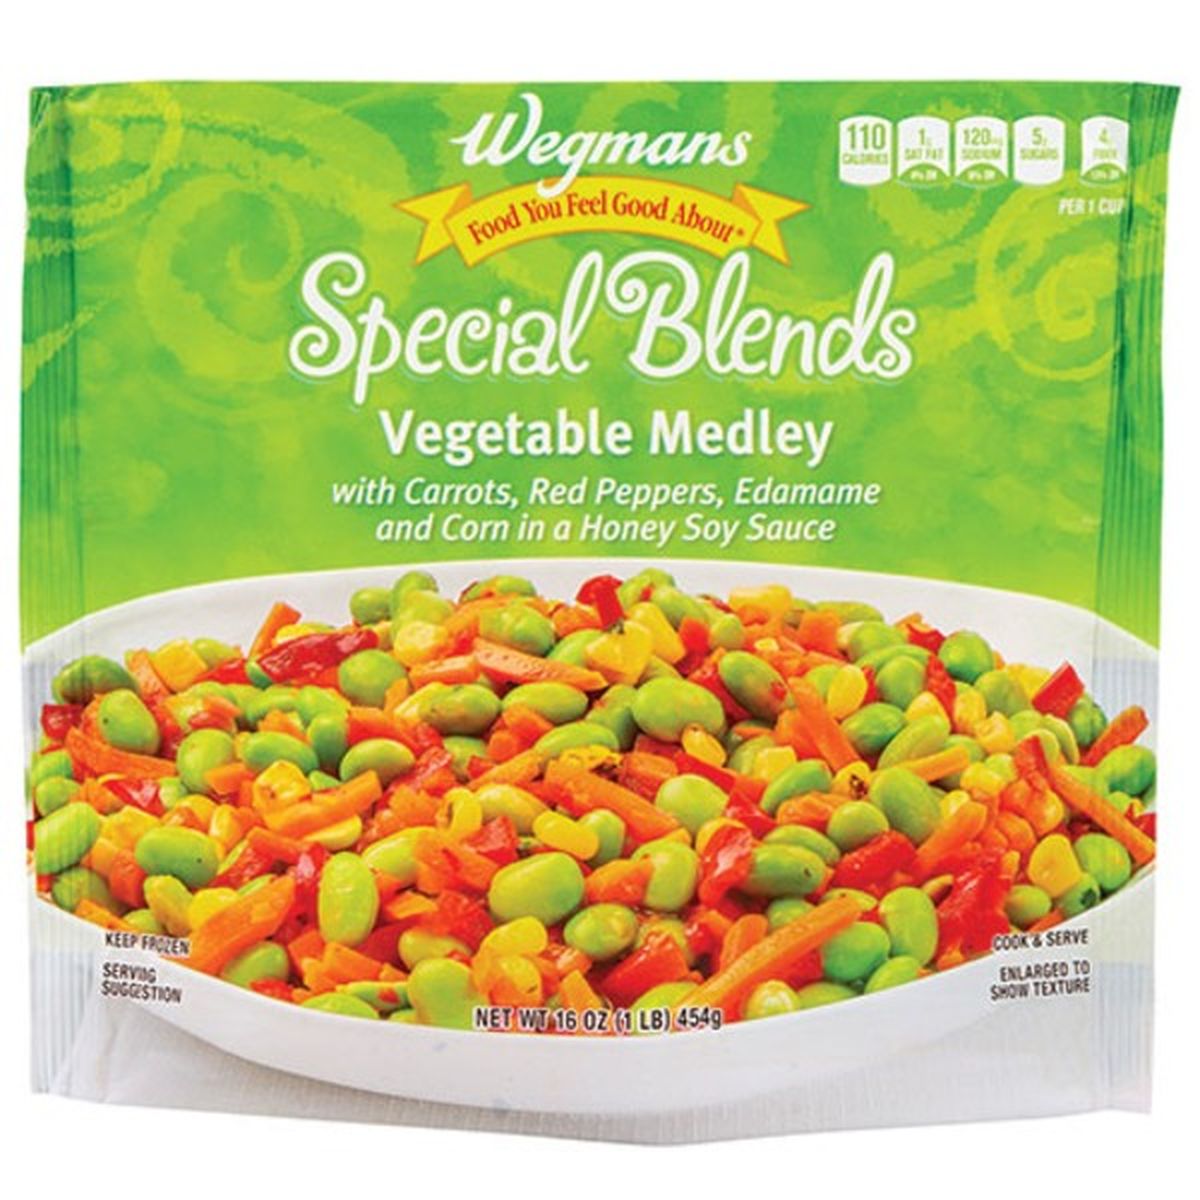 Calories in Wegmans Special Blends Vegetable Medley